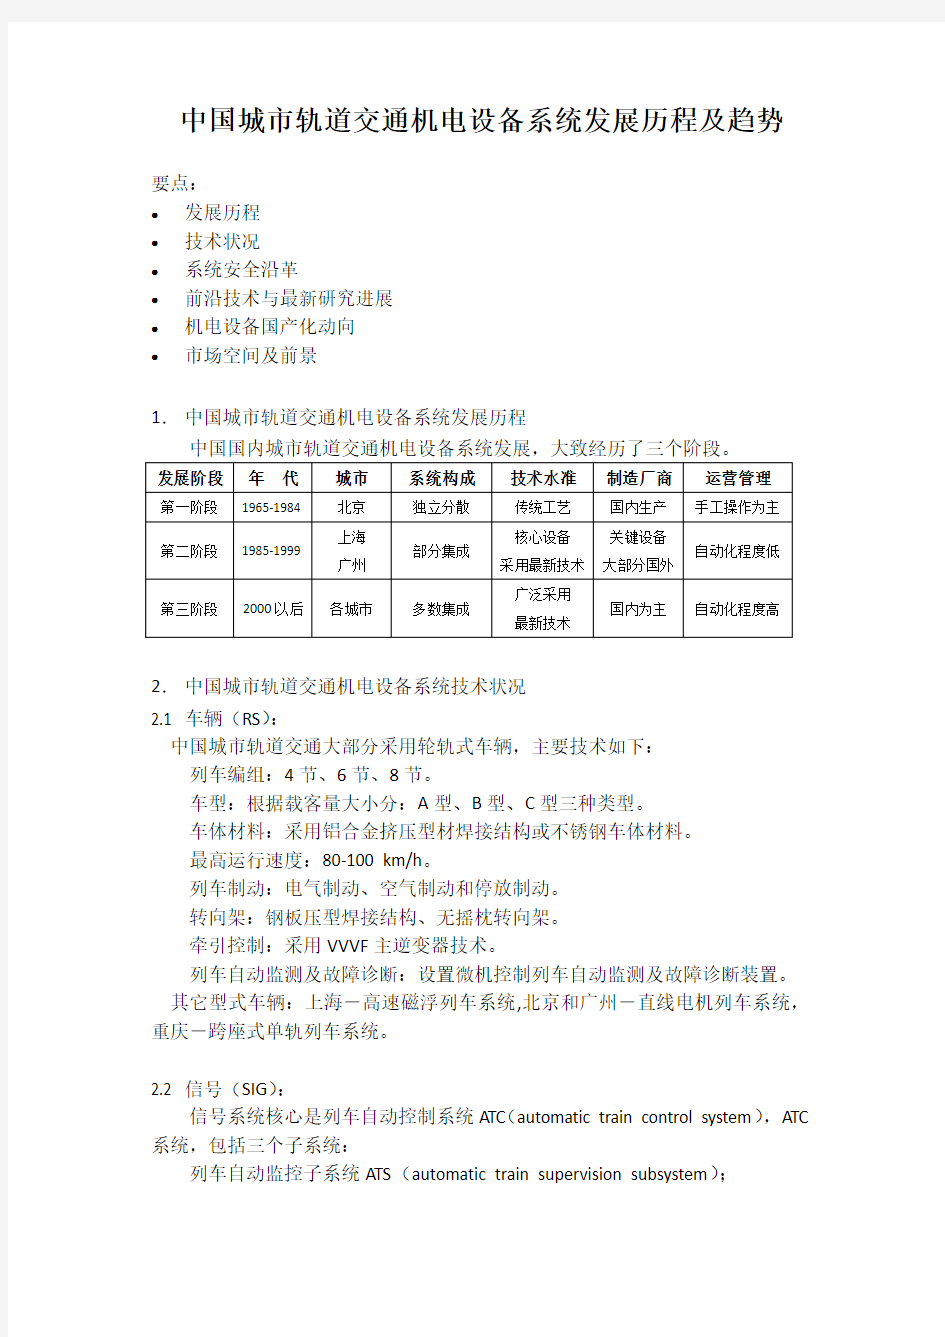 中国城市轨道交通机电设备系统发展历程及趋势XXXX0317